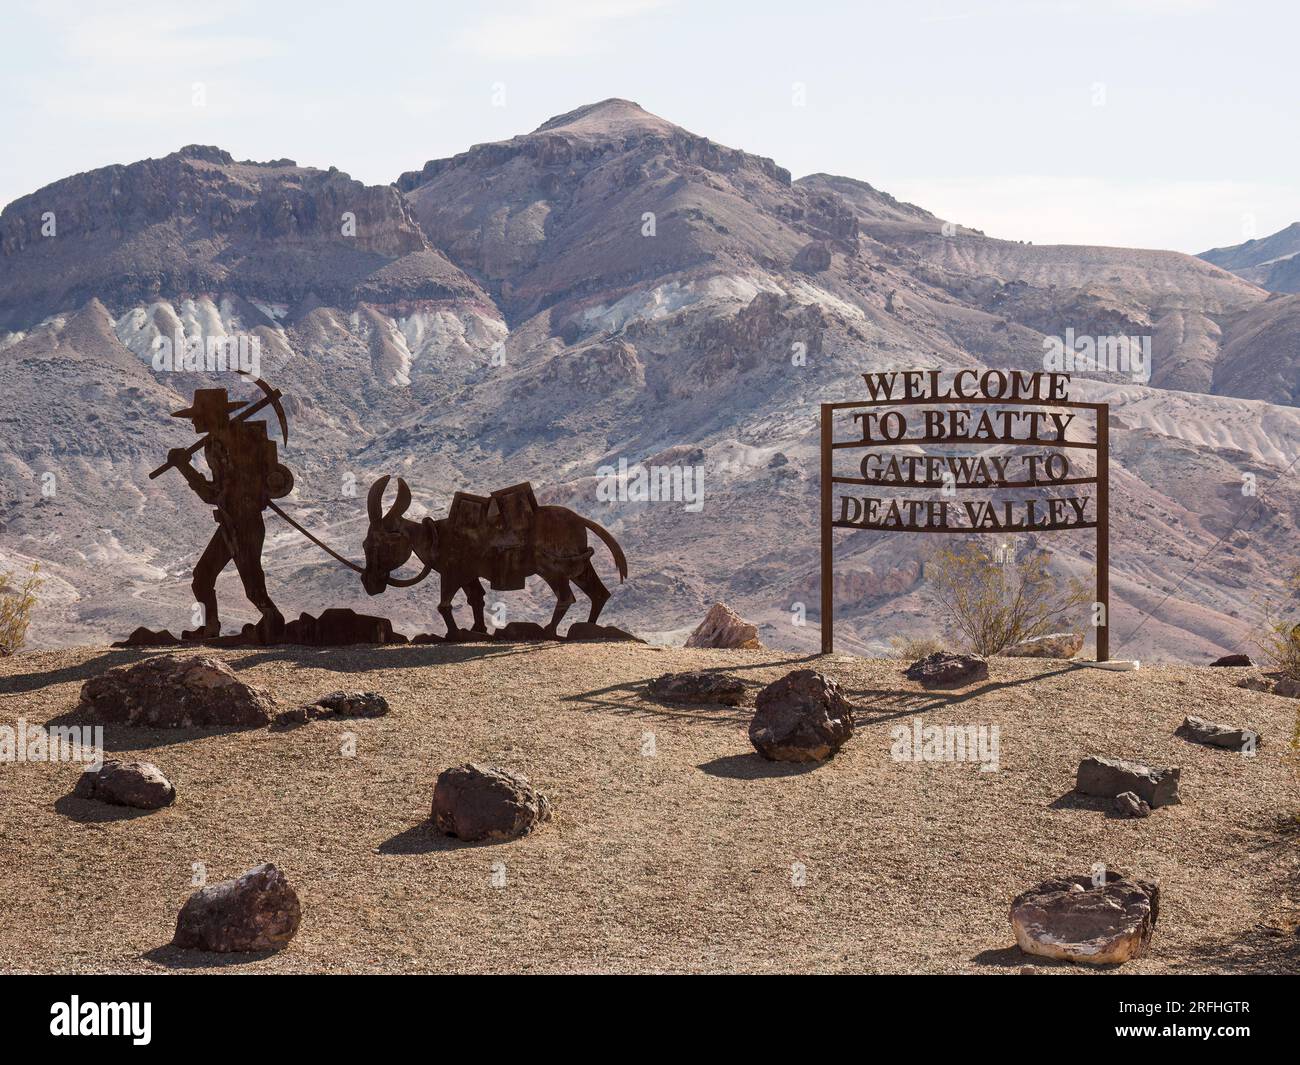 Un panneau accueillant les voyageurs à Beatty, porte de la Vallée de la mort près du parc national de la Vallée de la mort, Nevada, États-Unis. Banque D'Images